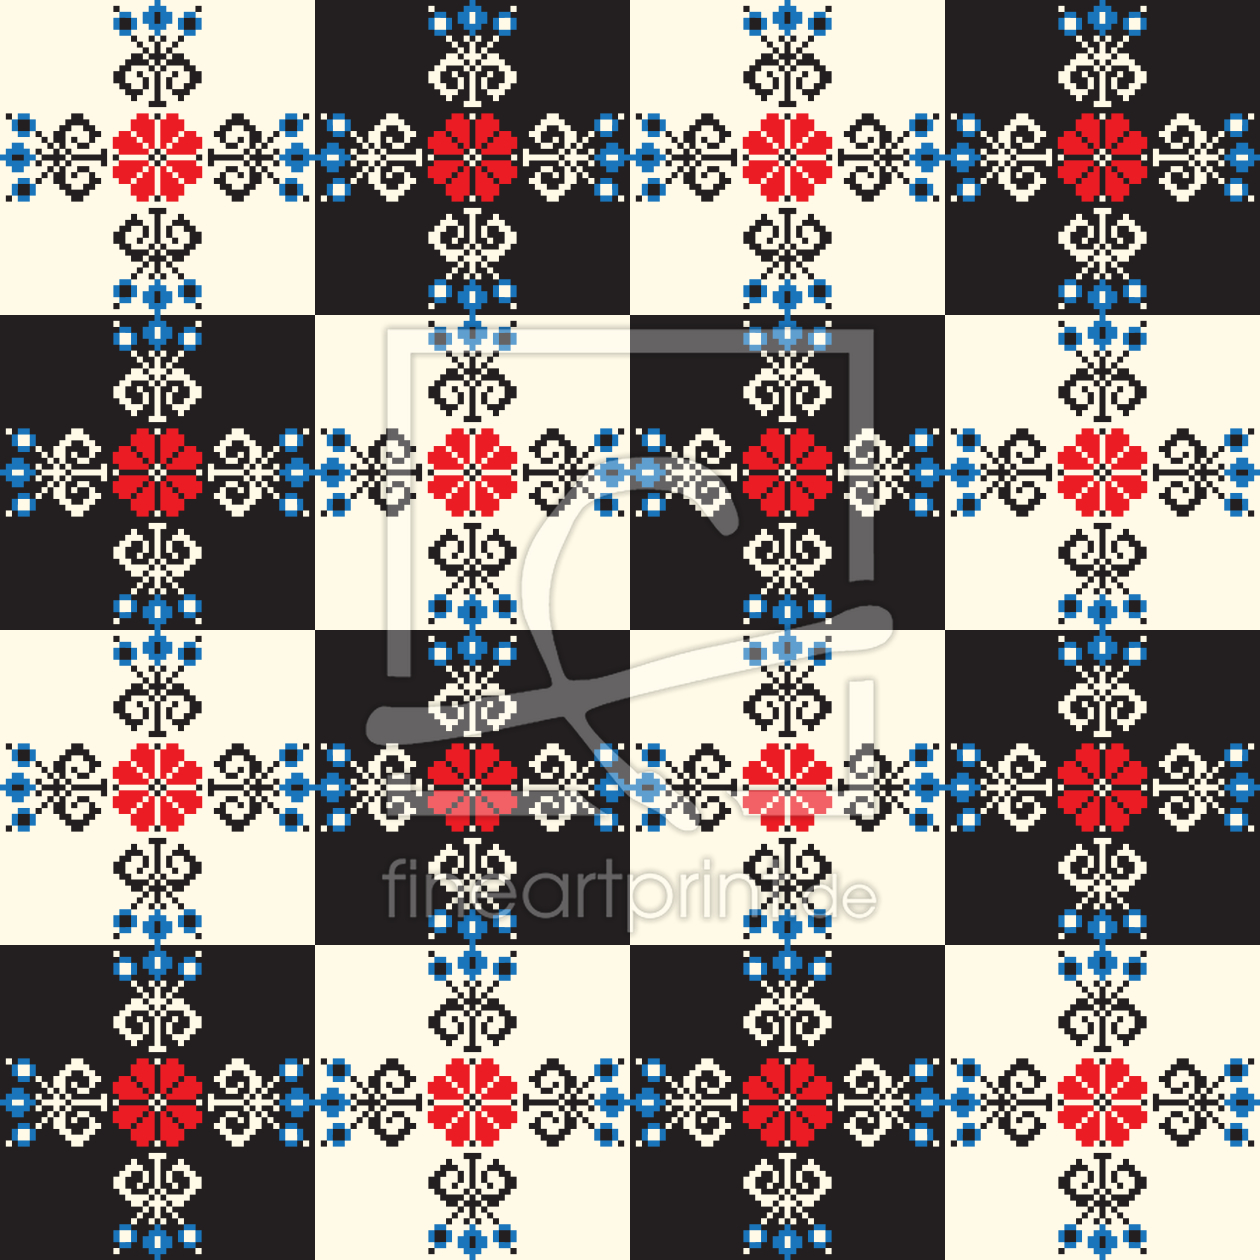 Bild-Nr.: 9015028 Ungarisches Schachbrett erstellt von patterndesigns-com